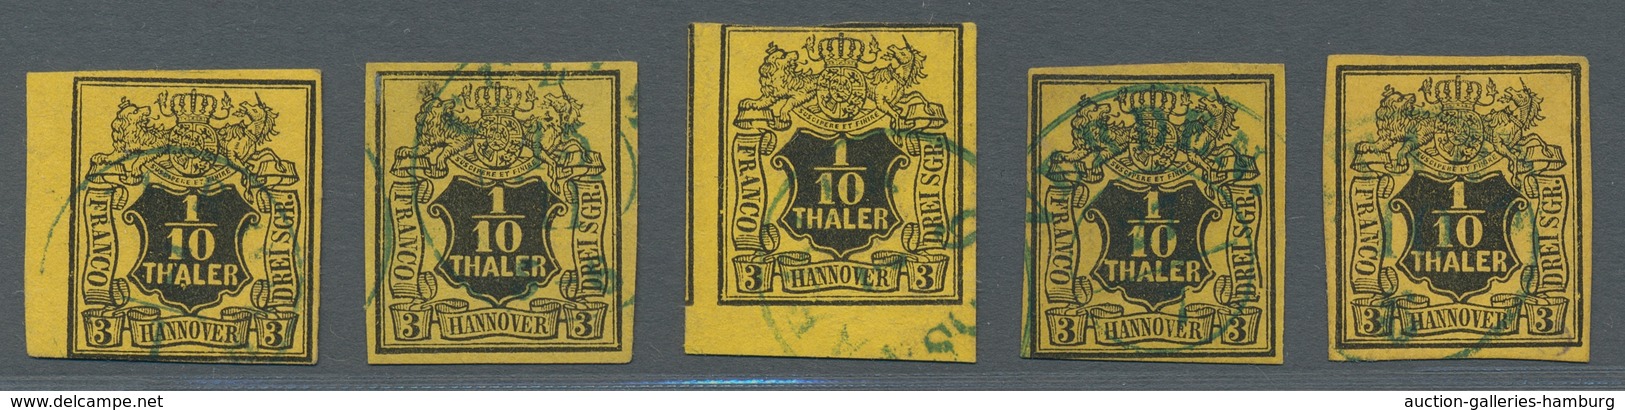 Hannover - Marken Und Briefe: 1851, Wappenzeichnung 1/10 Thaler, Fünf Sauber Gestempelte Werte, Teil - Hanover